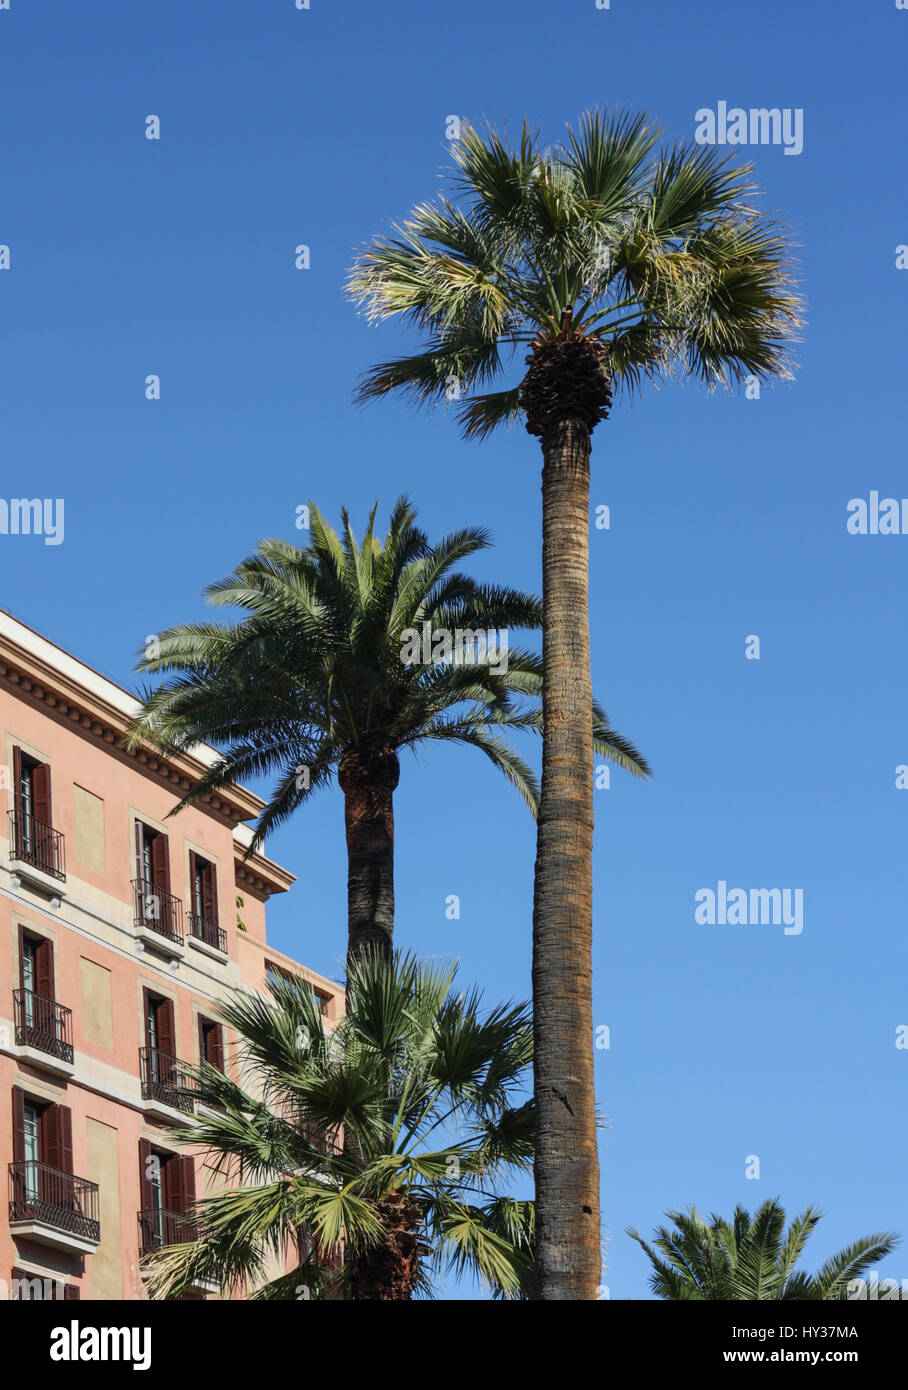 Barcelone, Espagne, 28 mars 2017 : île des Canaries Date Palm arbres de rue à Barcelone Espagne Banque D'Images